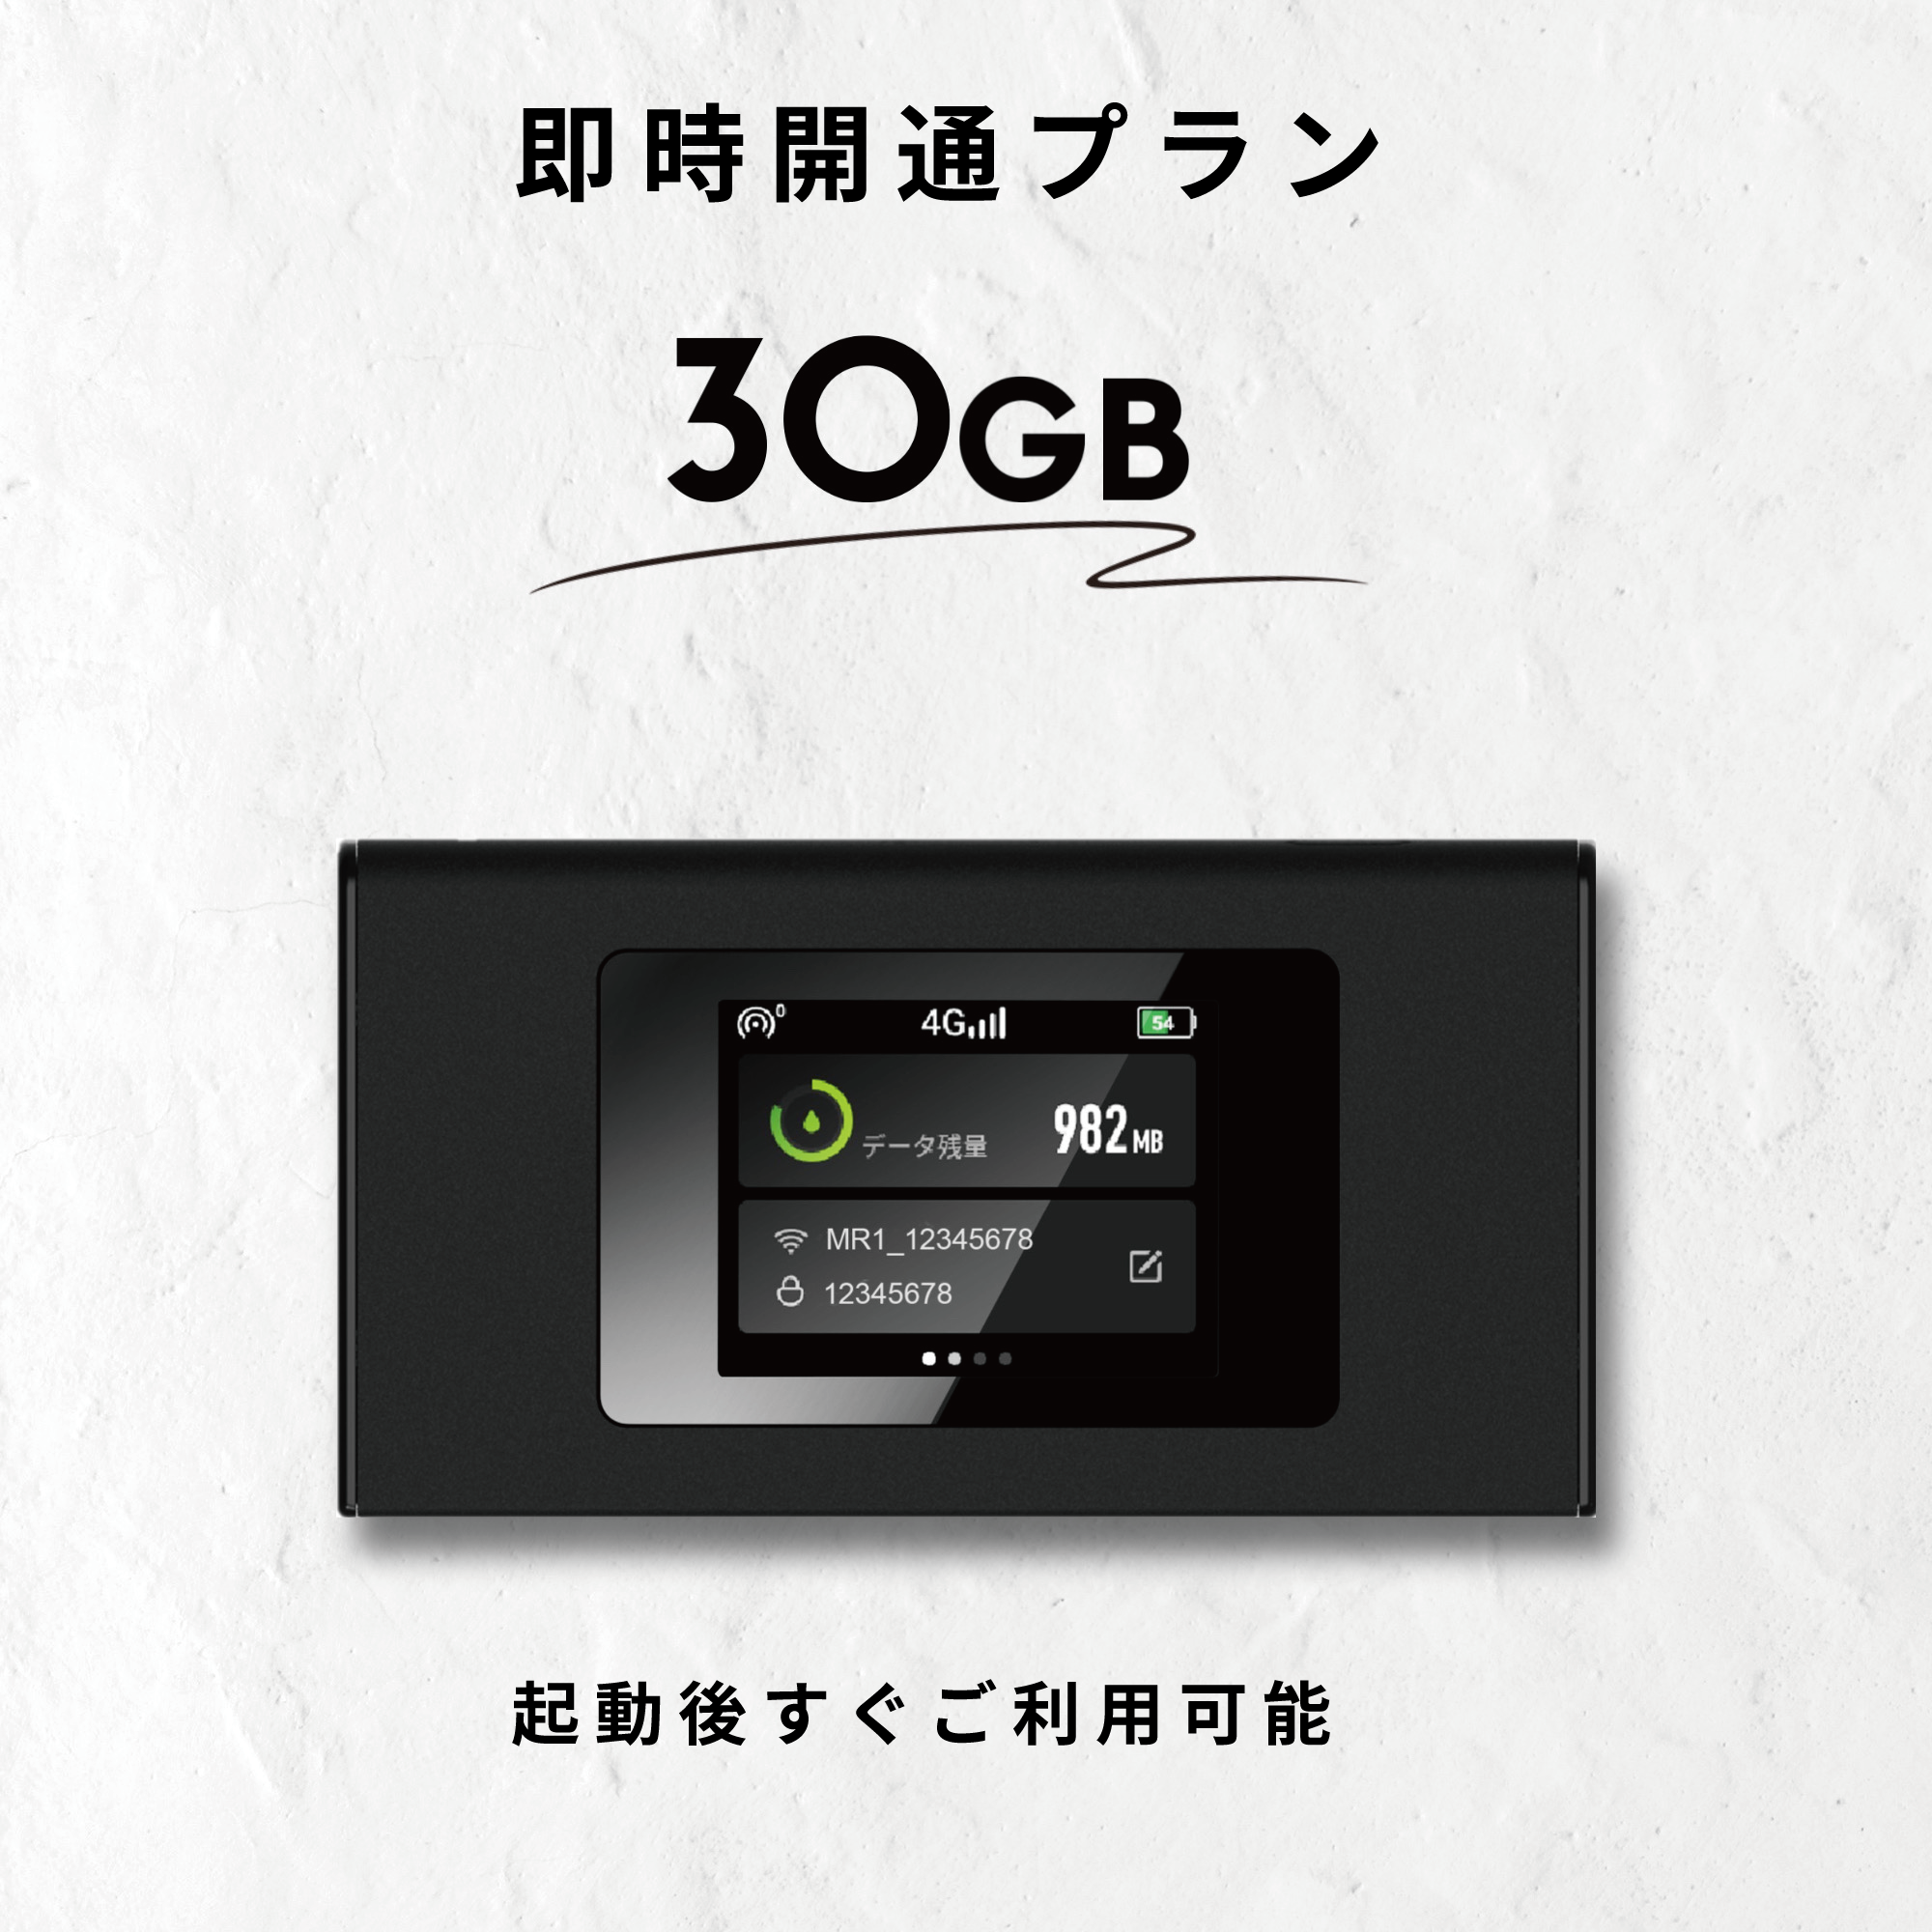 ギガセット モバイルリチャージwifi データ残量84.4GBデータ残量は844GBです